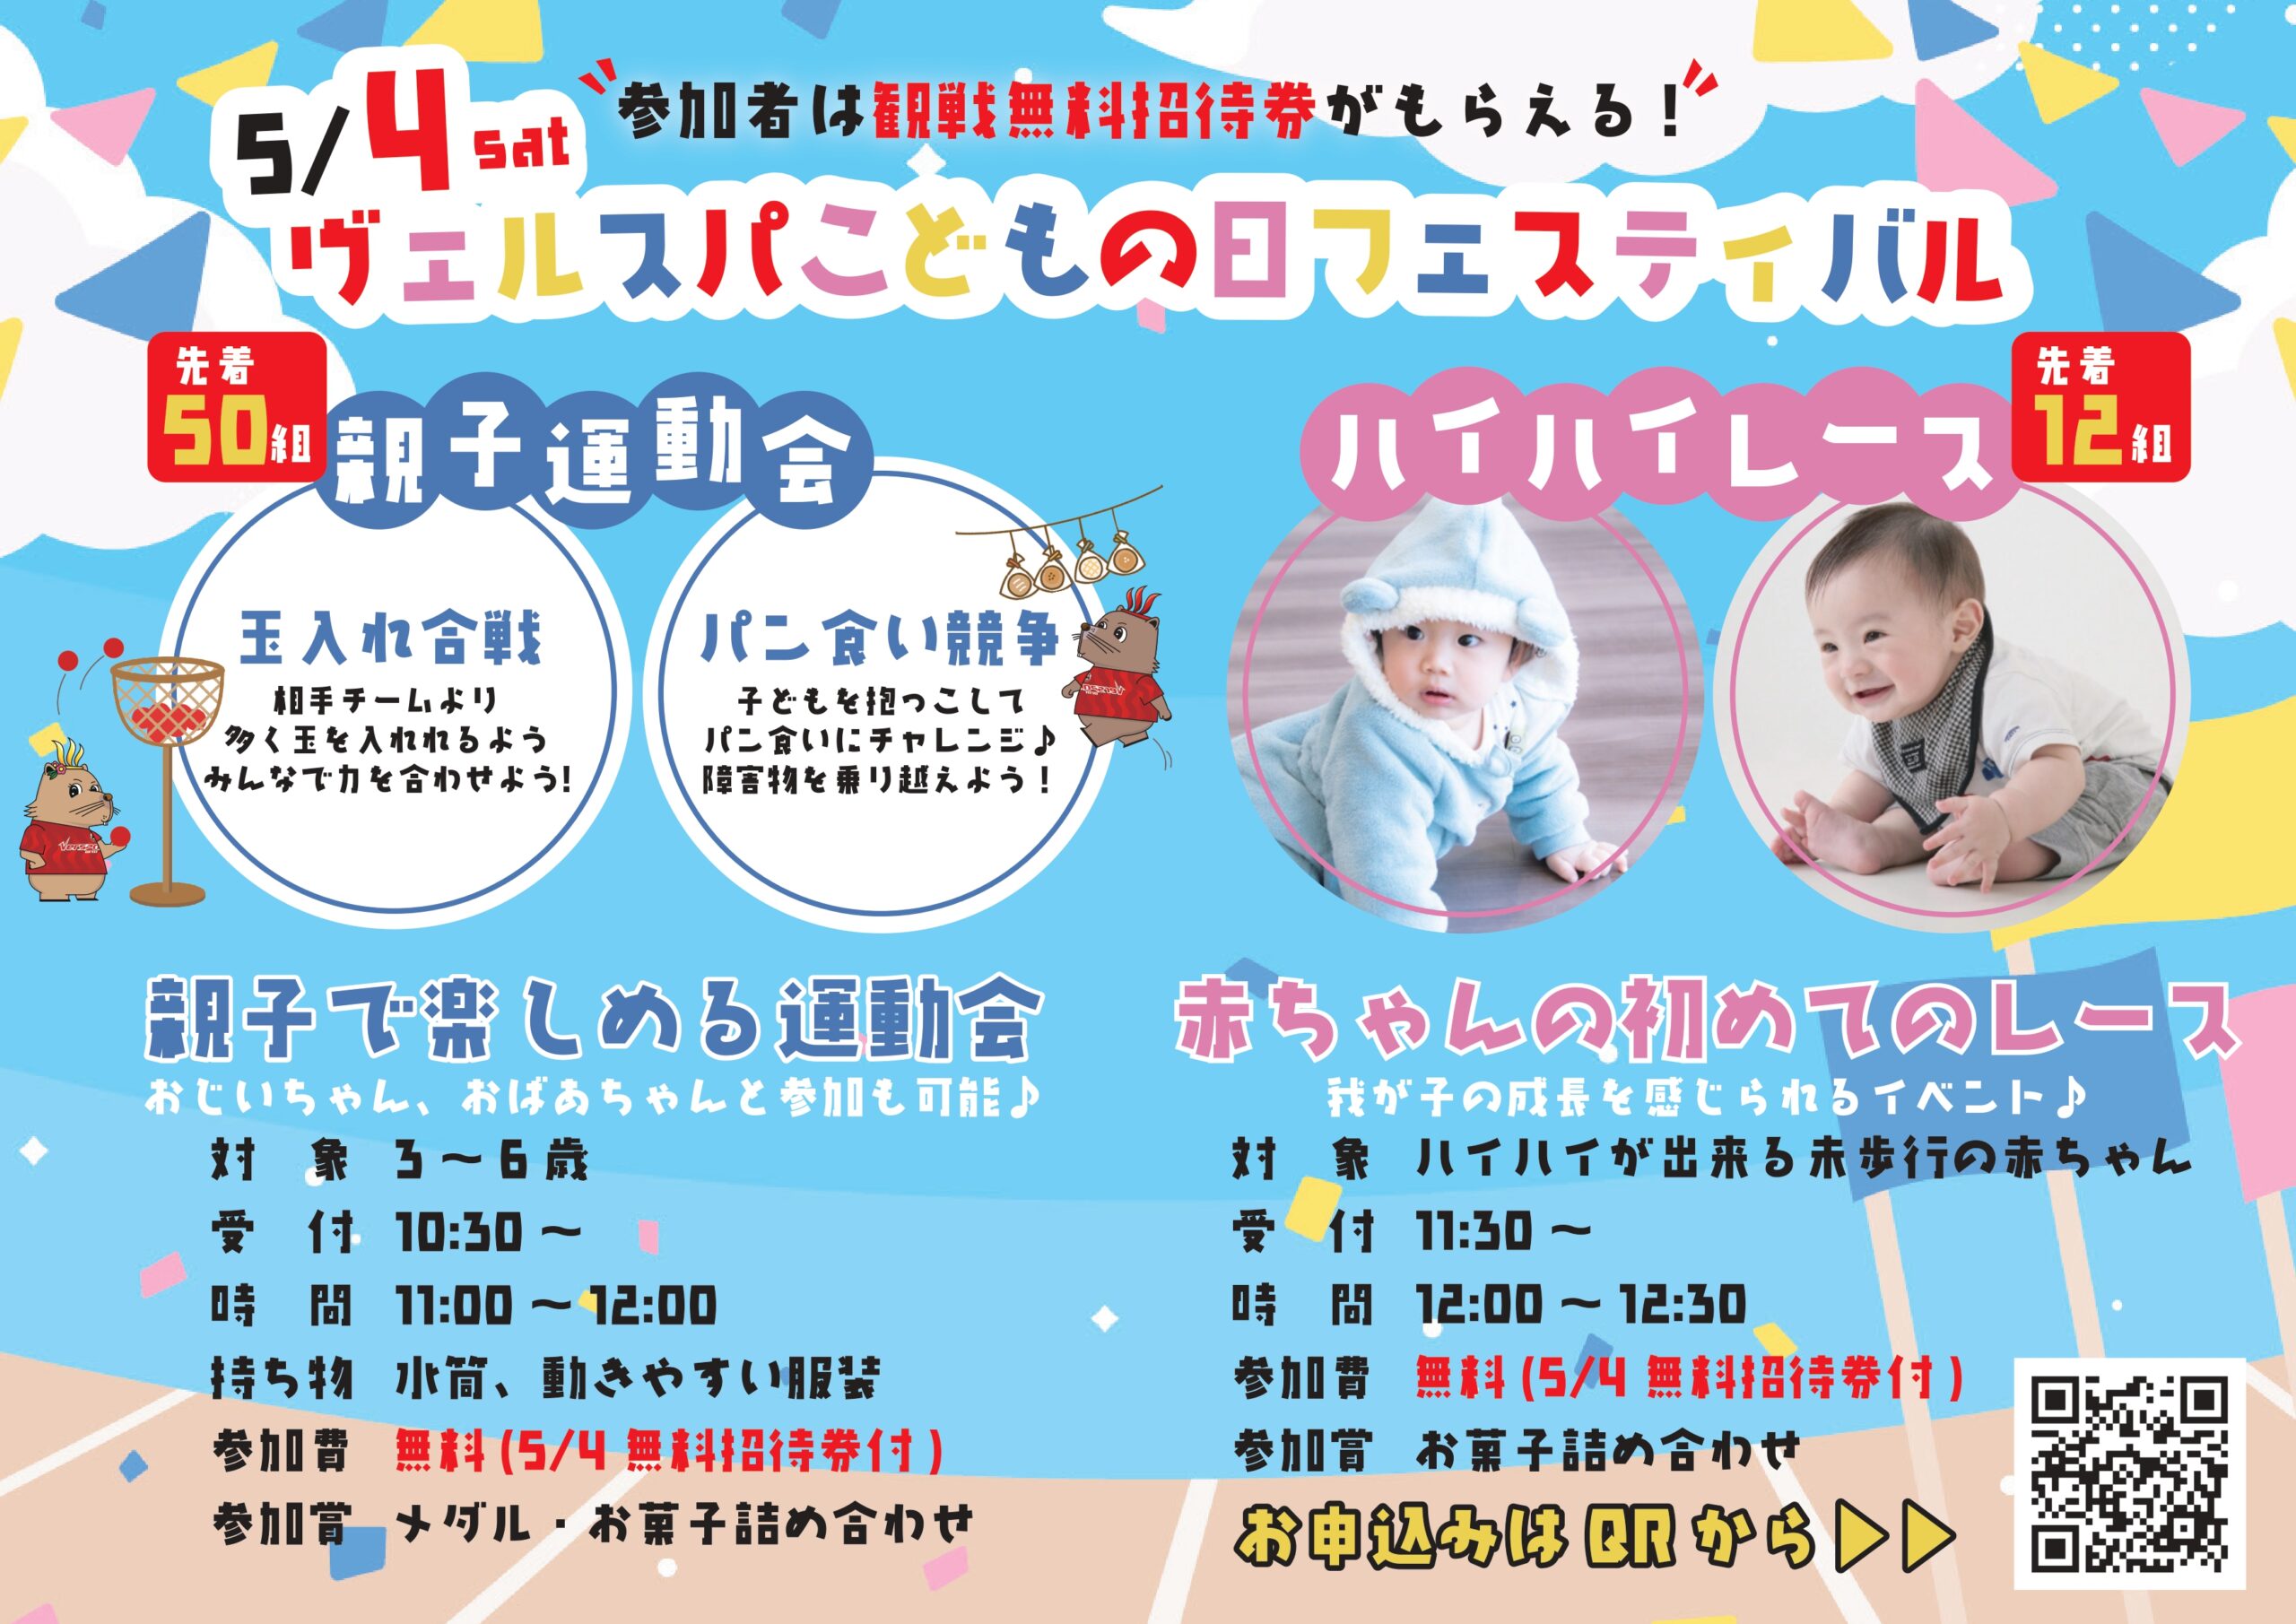 【5月4日】親子運動会・ハイハイレース初開催のお知らせ